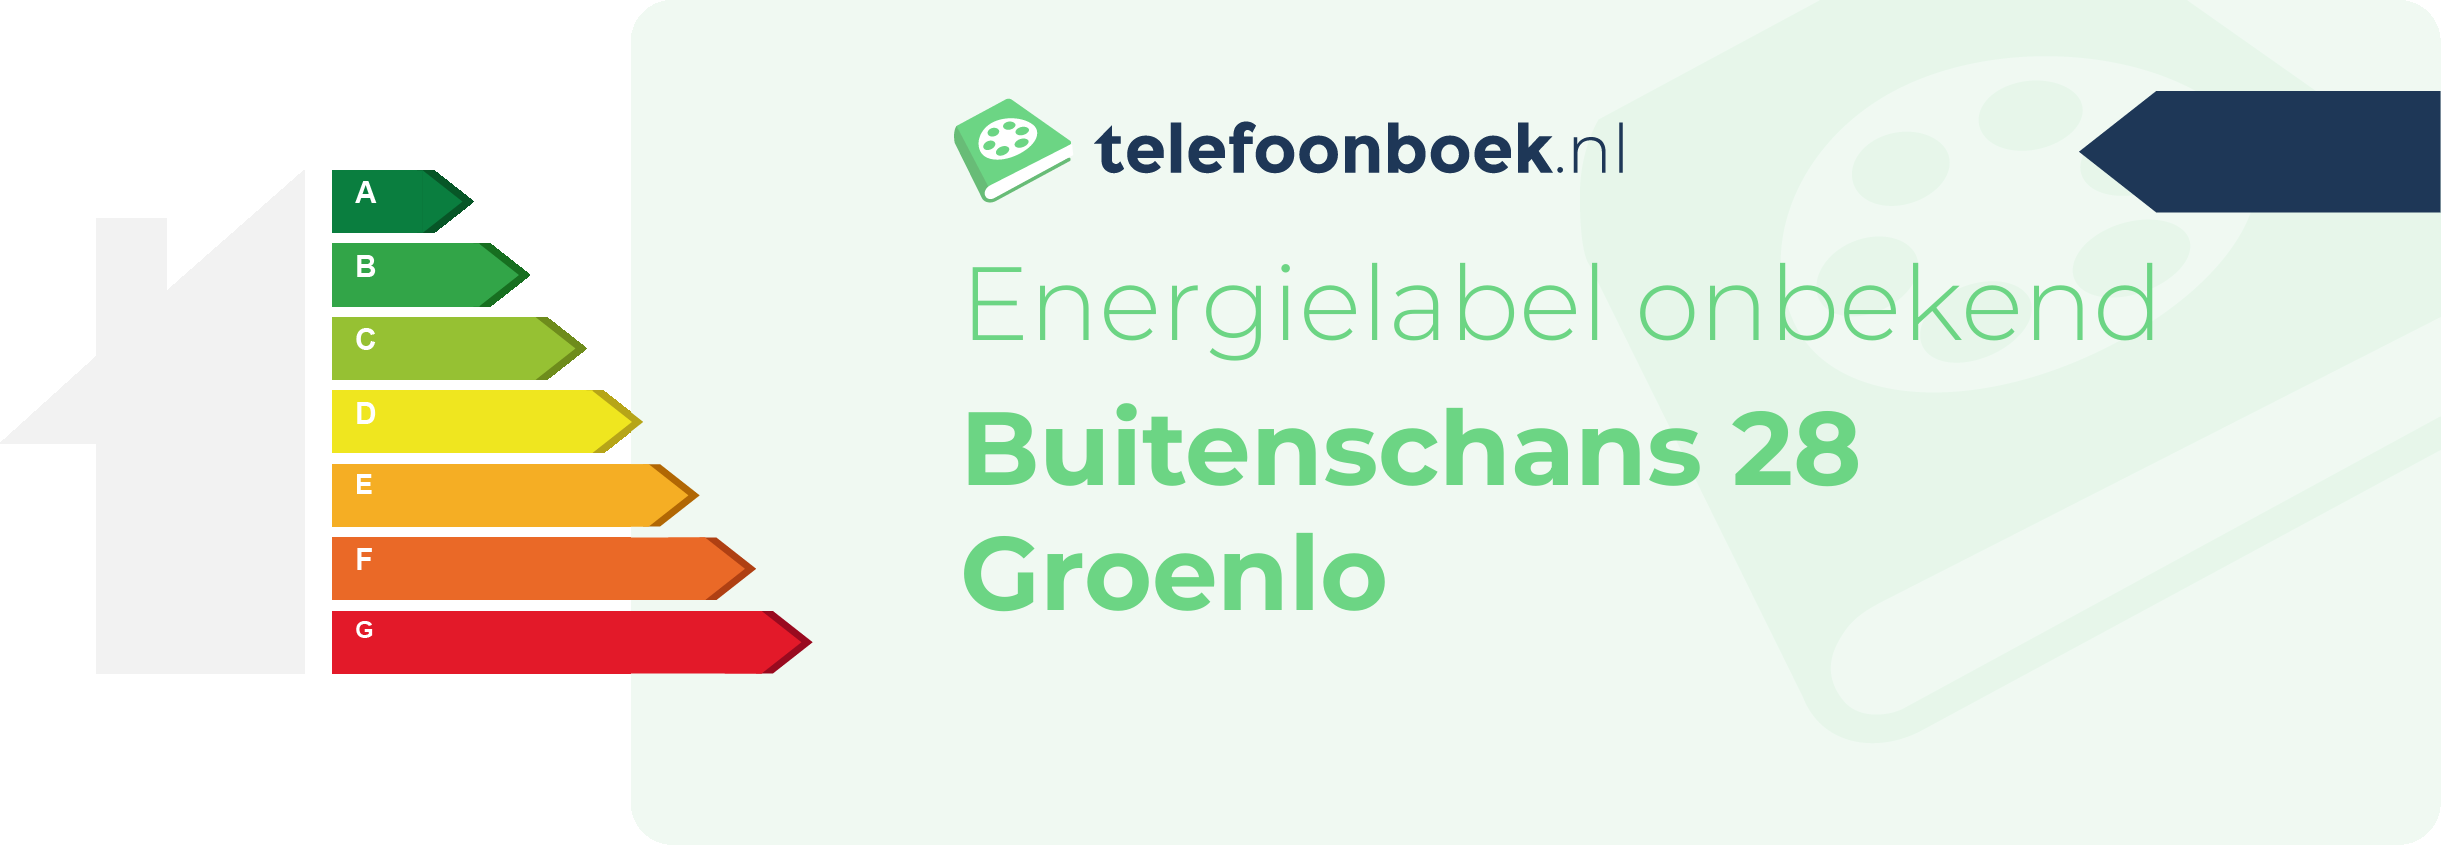 Energielabel Buitenschans 28 Groenlo